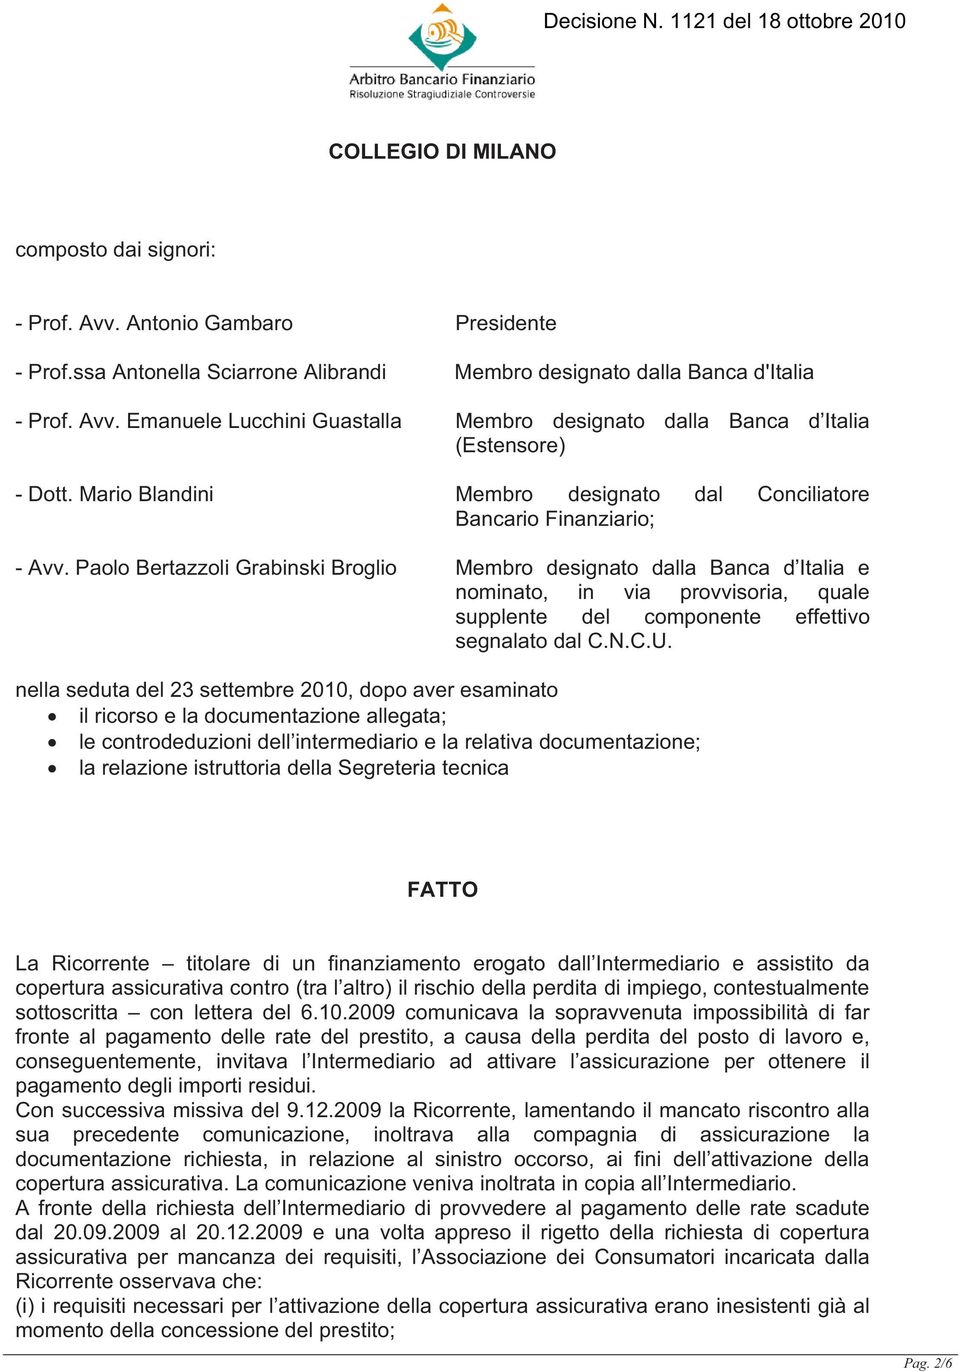 Paolo Bertazzoli Grabinski Broglio Membro designato dalla Banca d Italia e nominato, in via provvisoria, quale supplente del componente effettivo segnalato dal C.N.C.U.